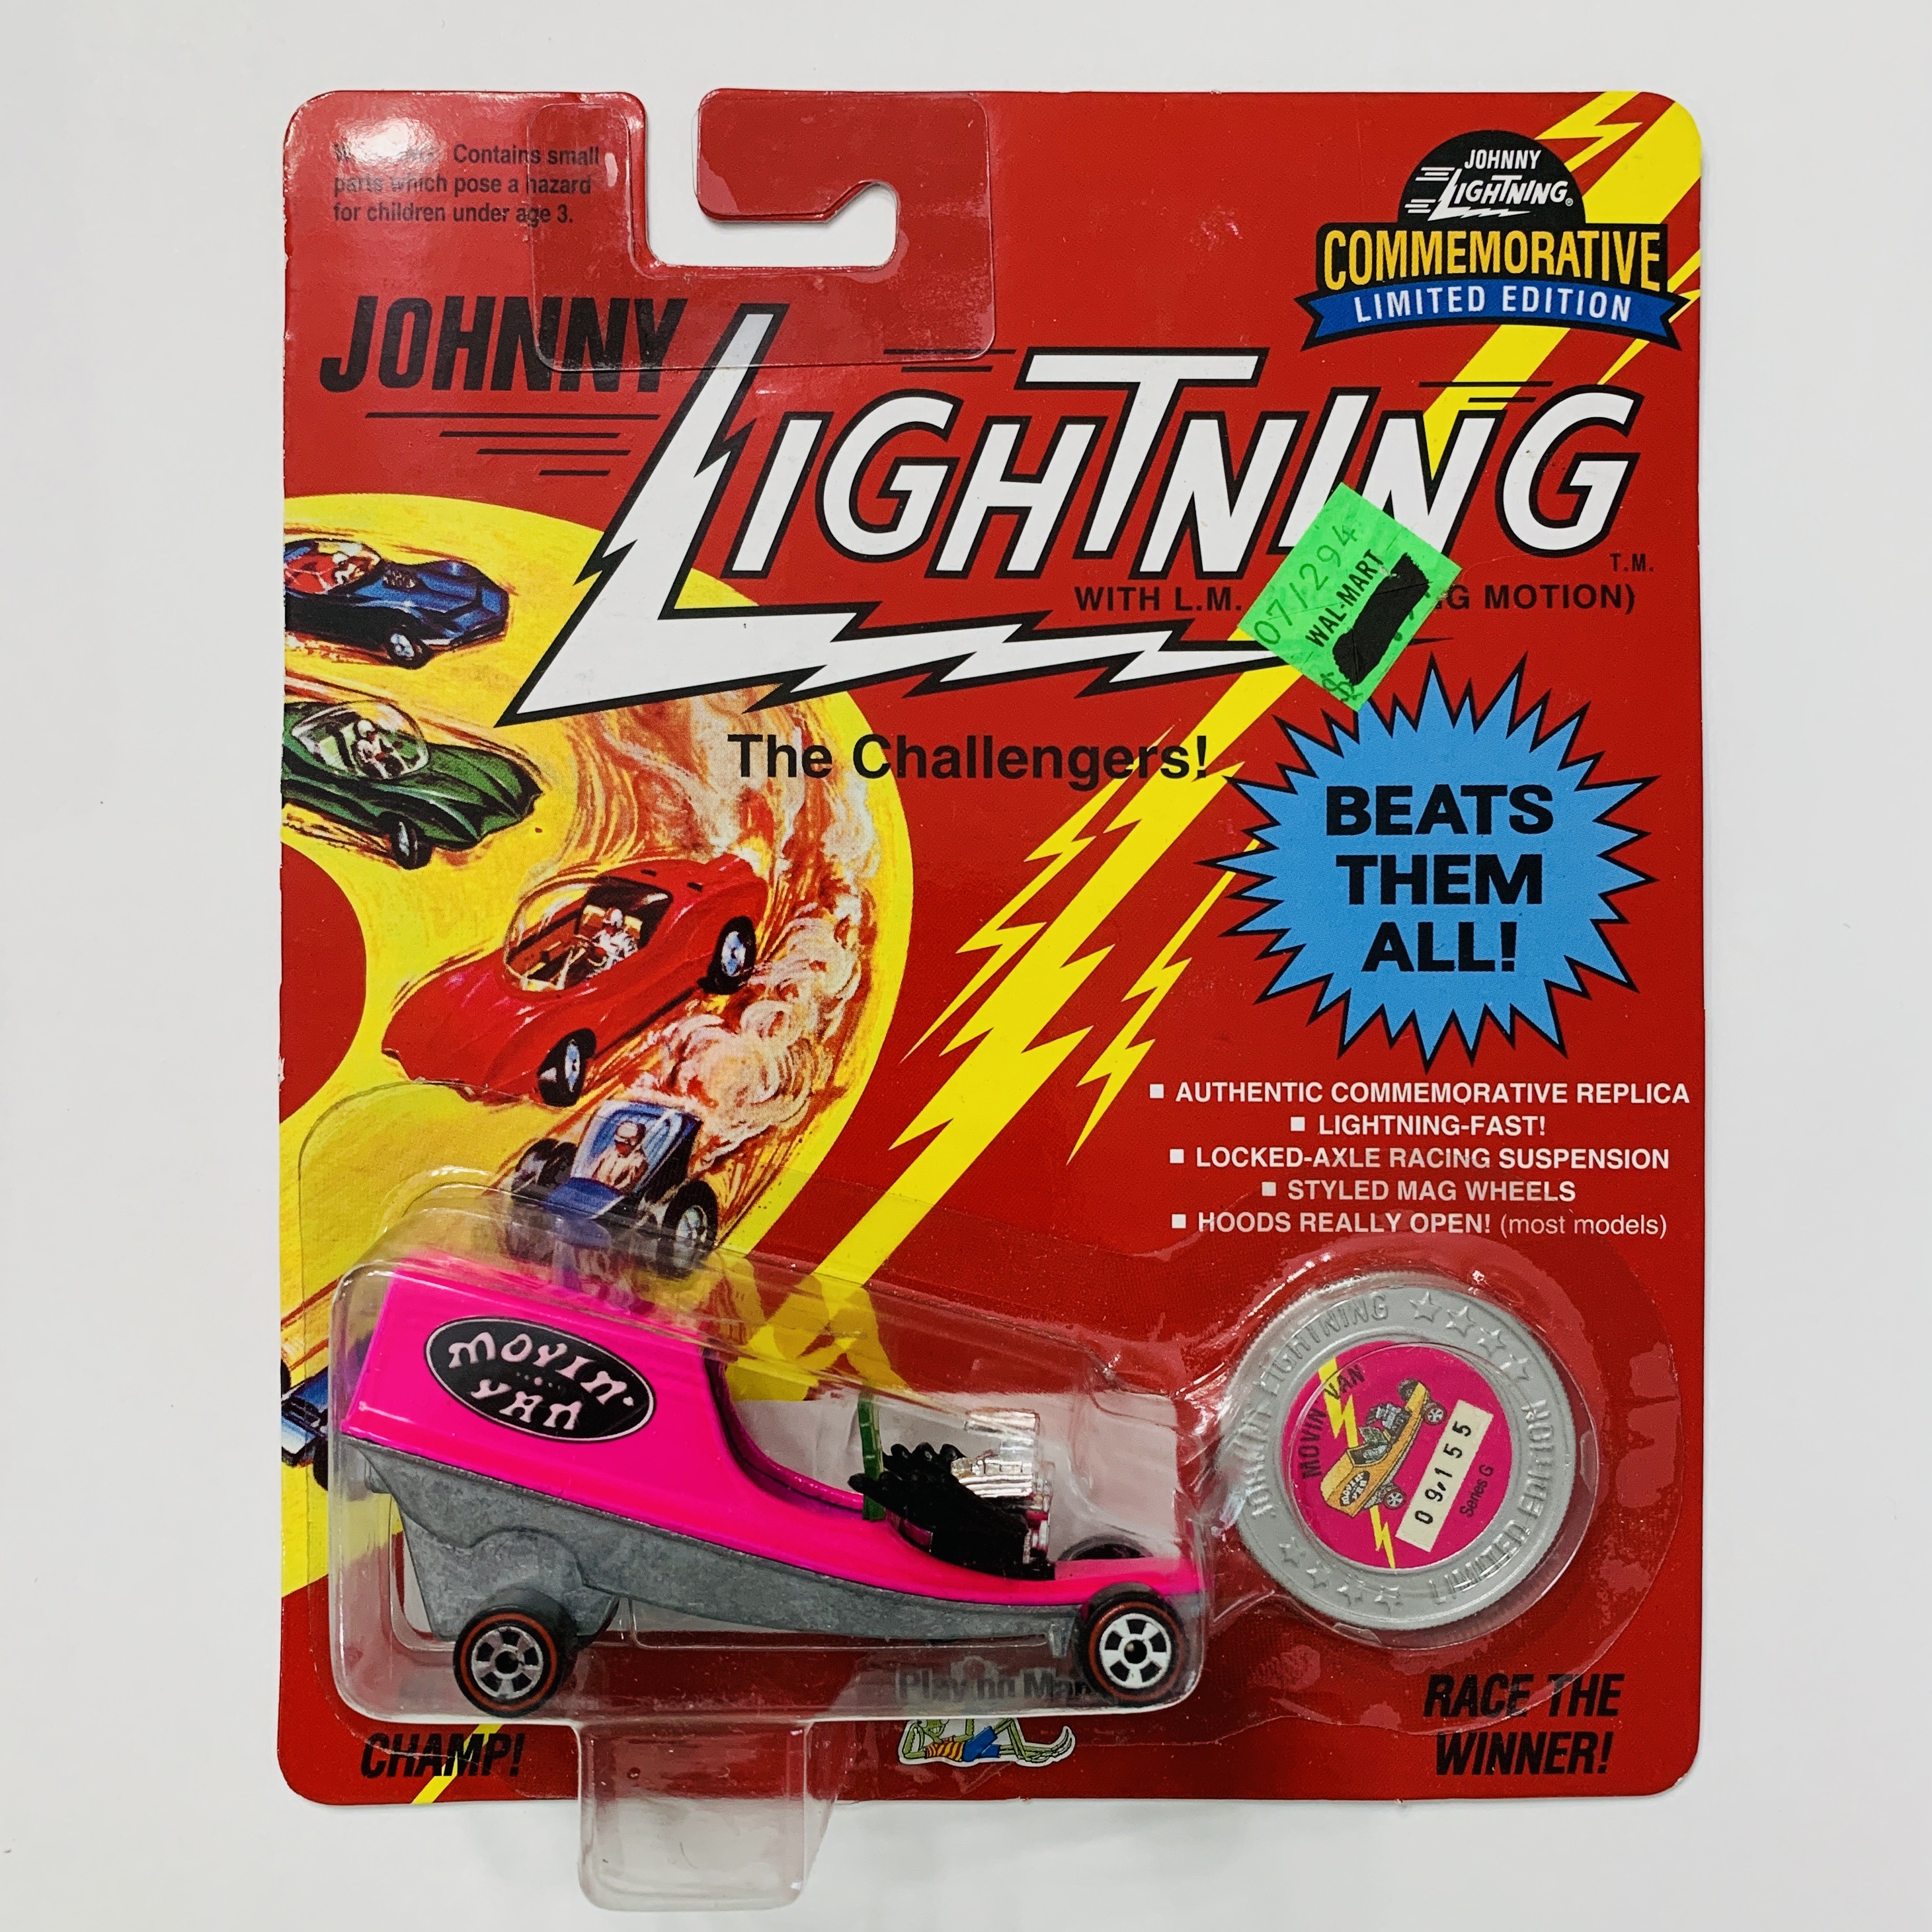 Johnny Lightning Commemorative Movin' Van - Pink